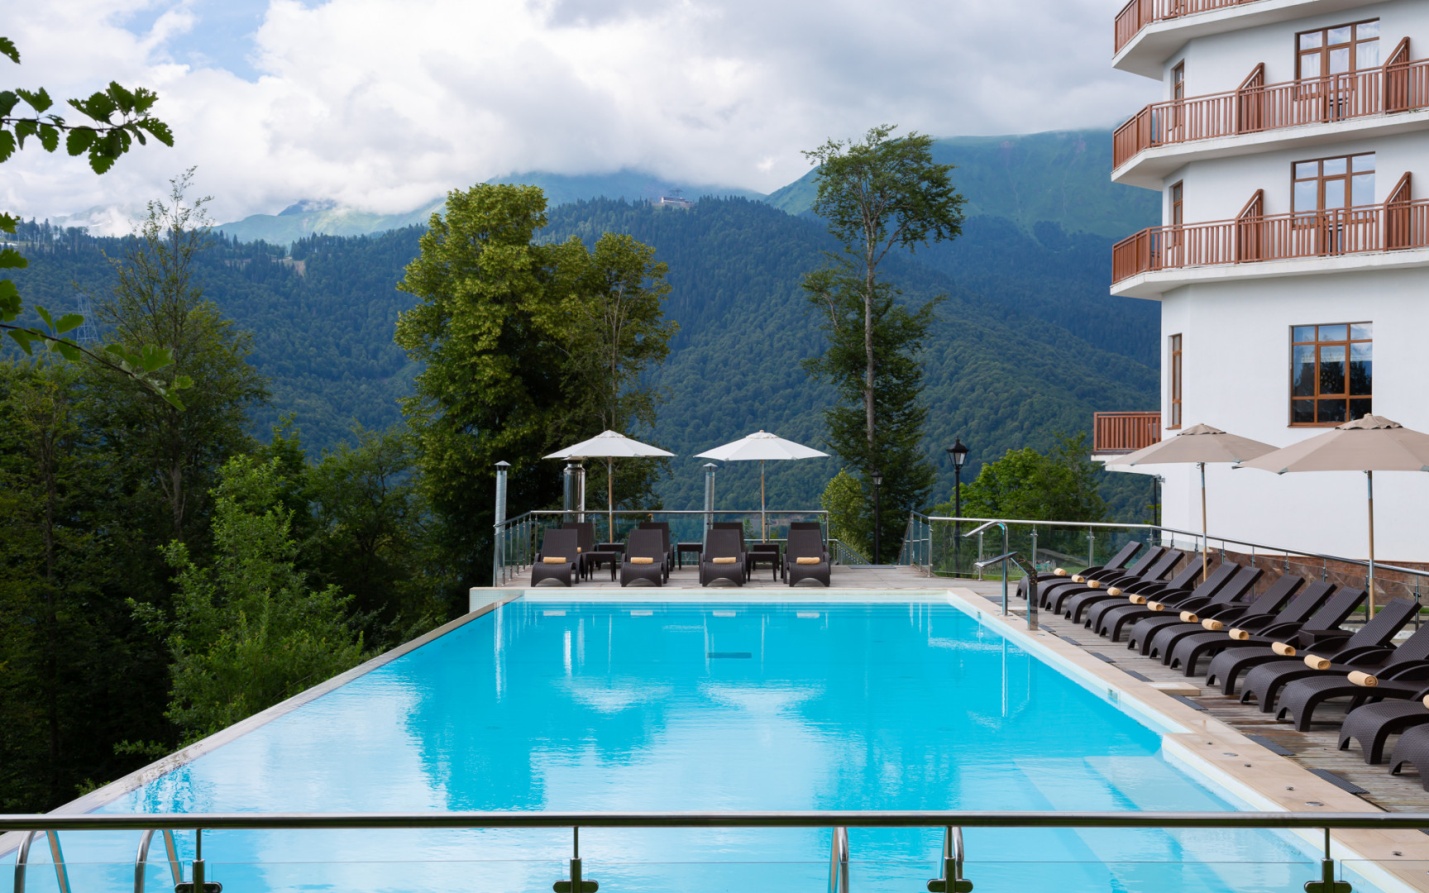 Почему отель в горах - идеальное место для отдыха?